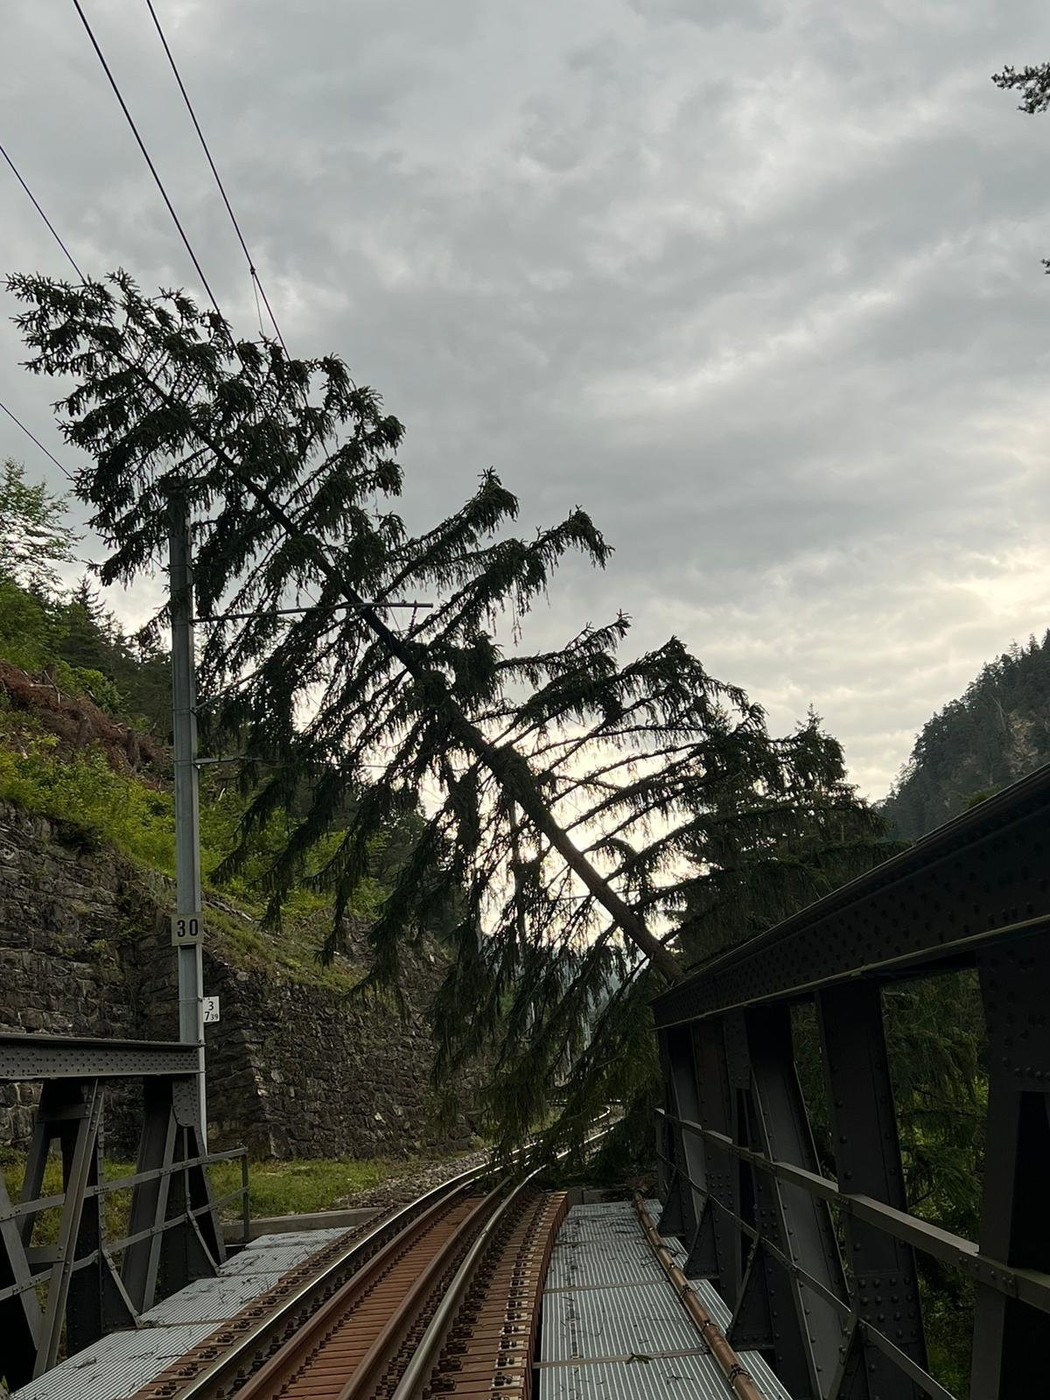 Starke Winde: Im Streckenabschnitt von Chur nach Arosa ist ein Baum wegen des starken Windes umgestürzt.